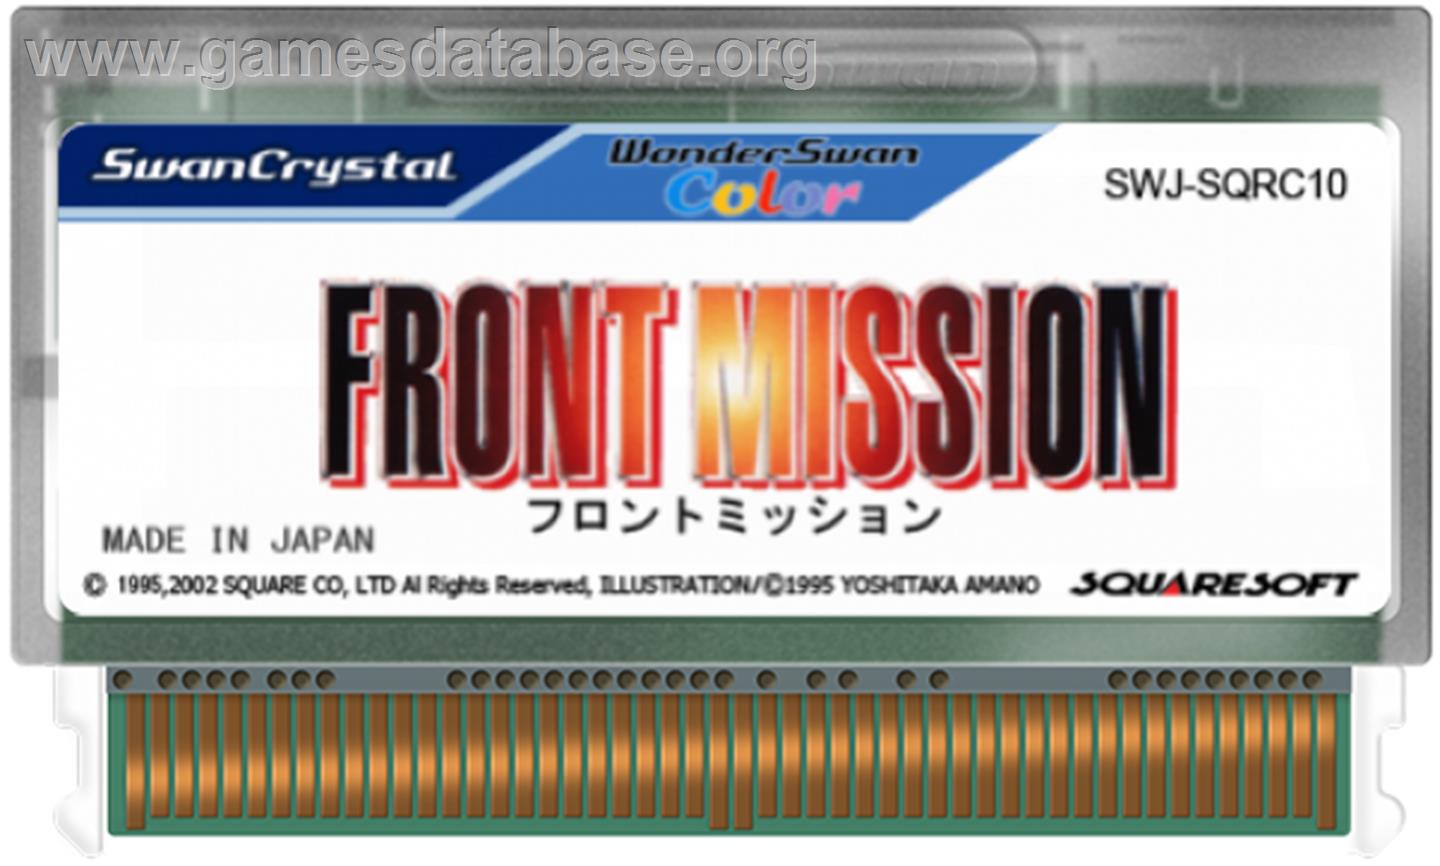 Front Mission - Bandai WonderSwan Color - Artwork - Cartridge